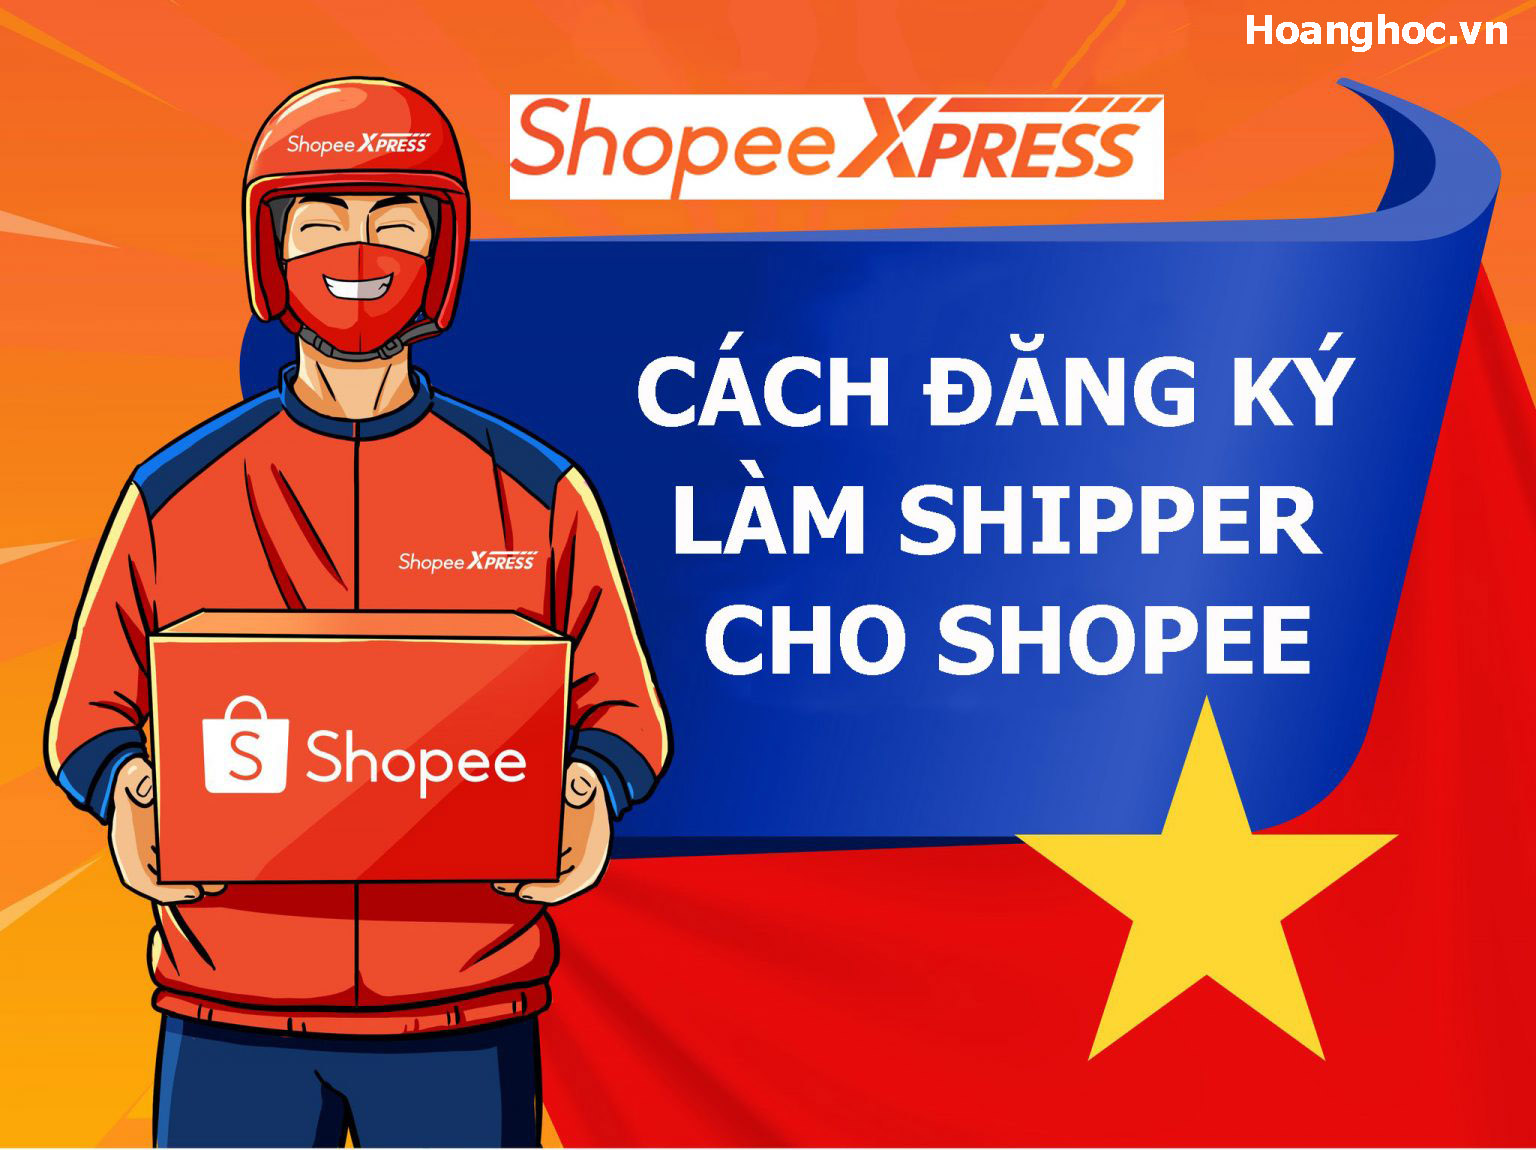 Hướng dẫn cách đăng ký làm shipper cho Shopee